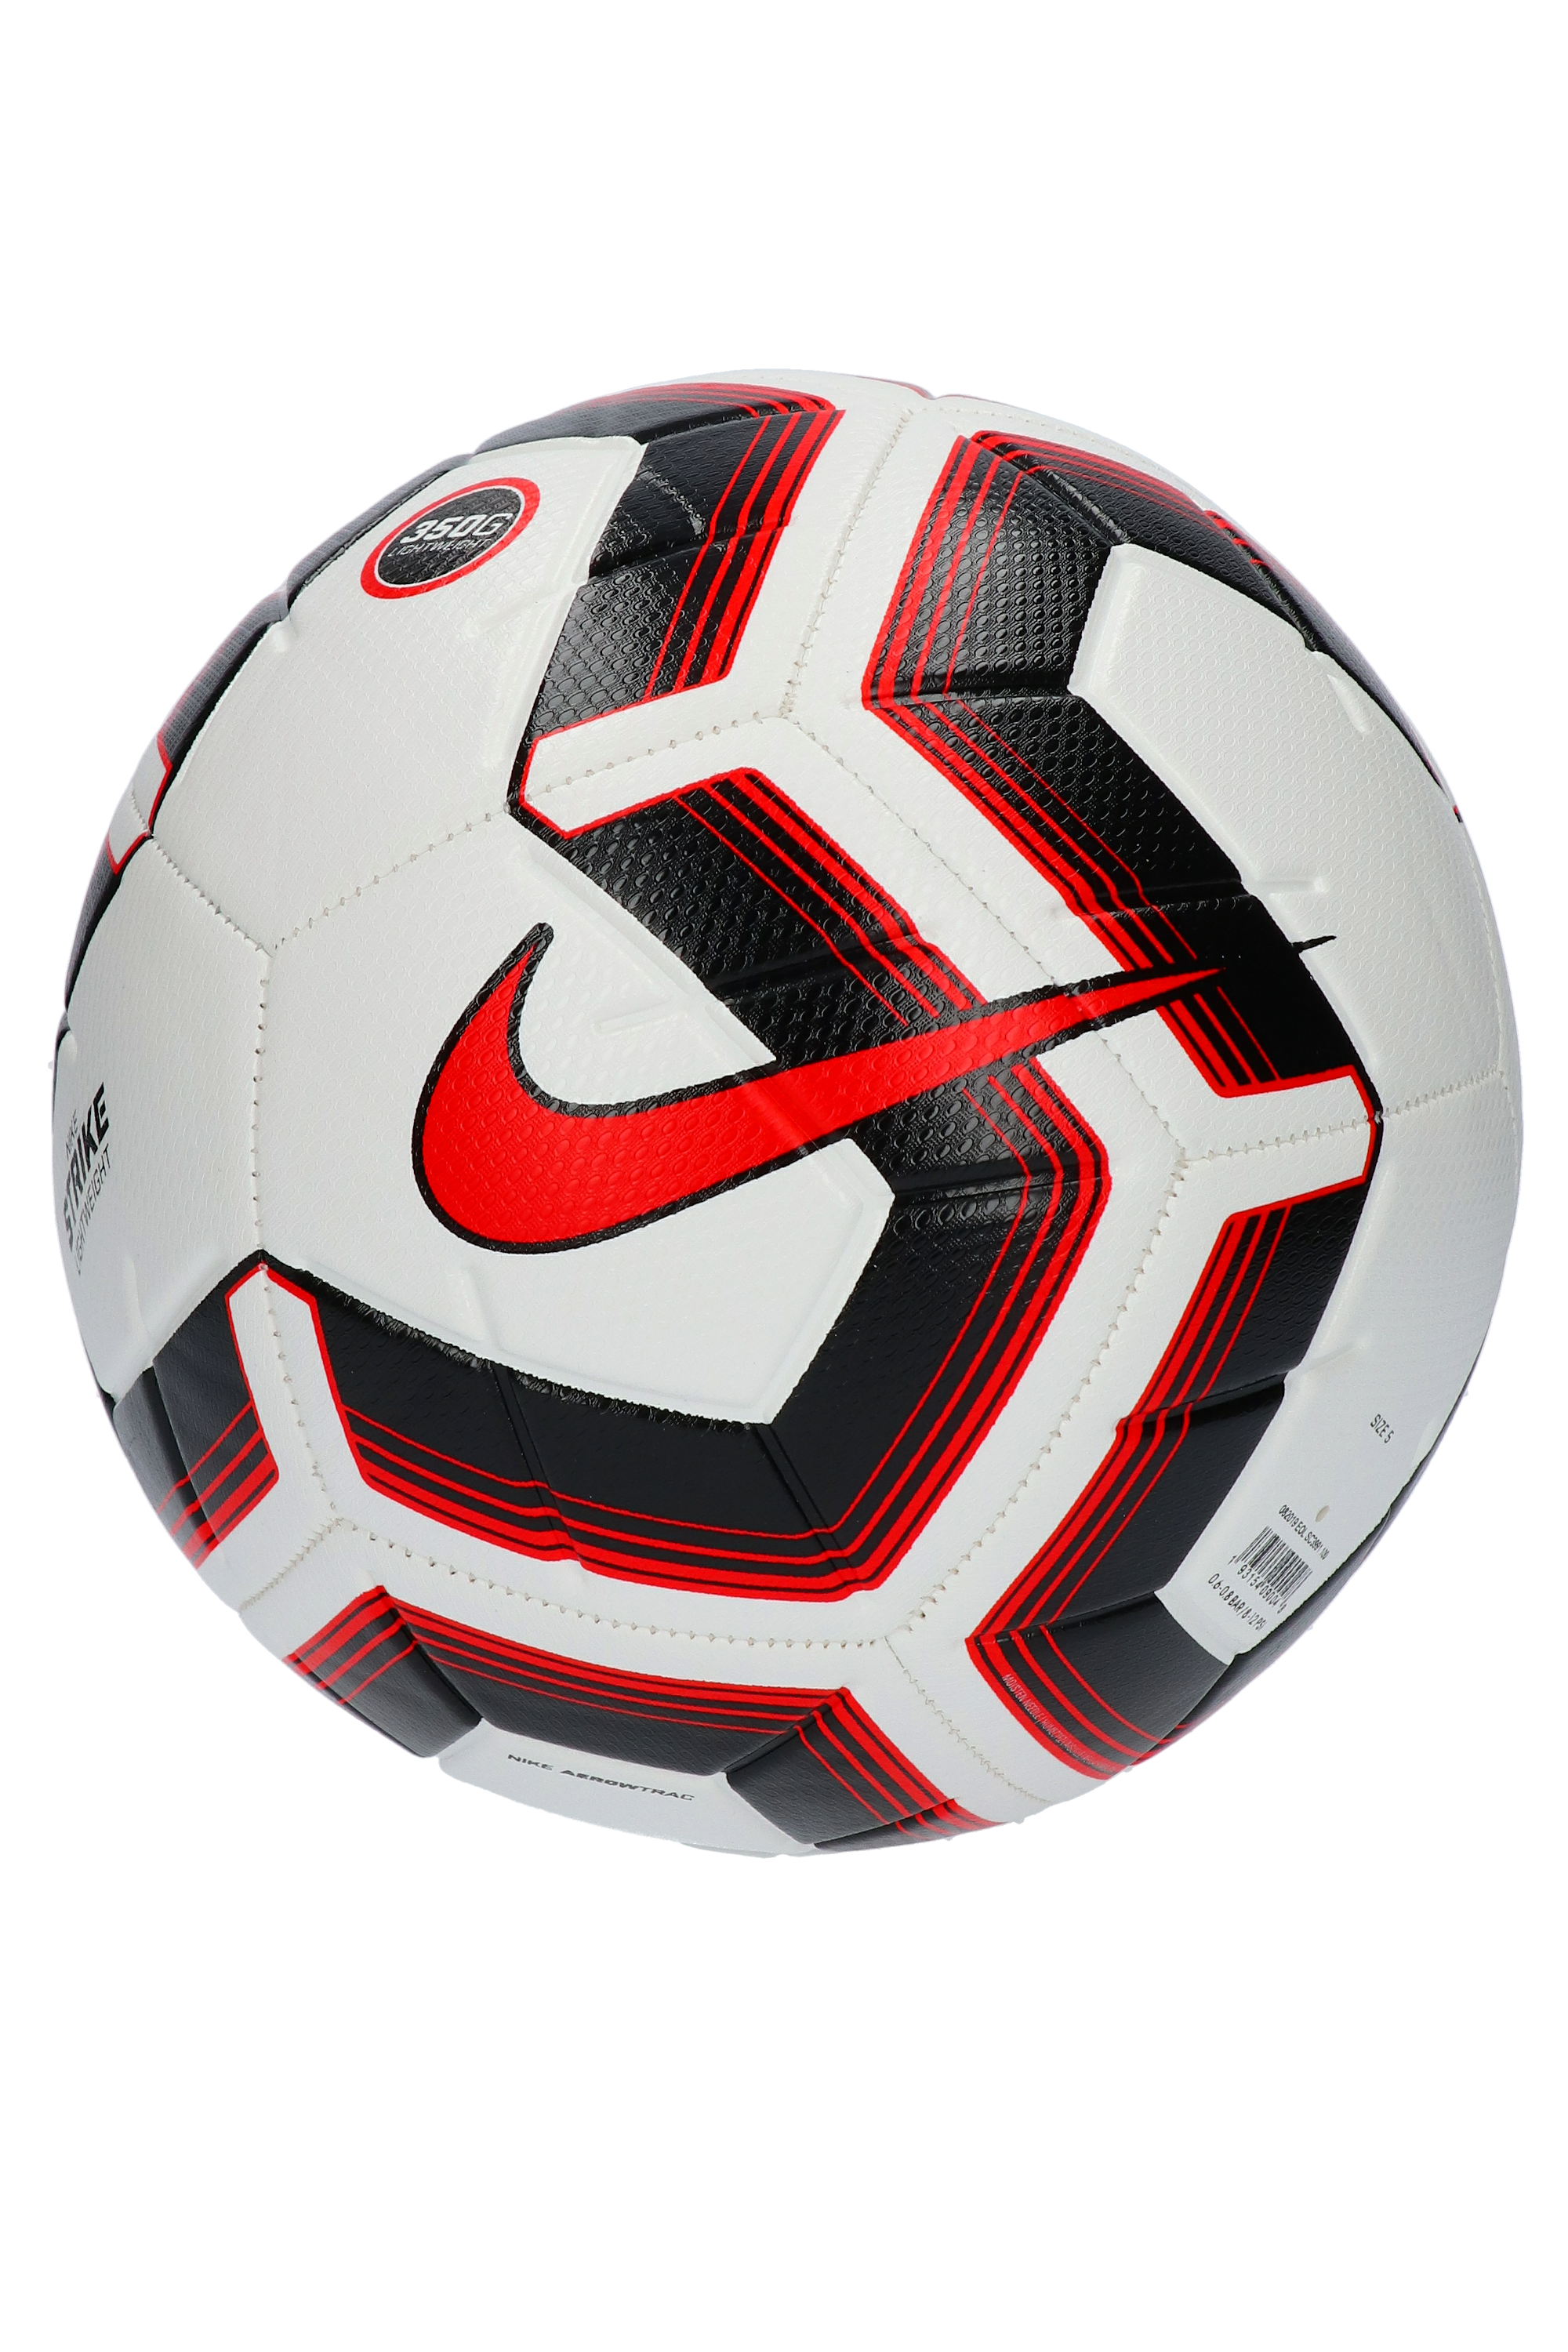 nike strike team 350g soccer ball